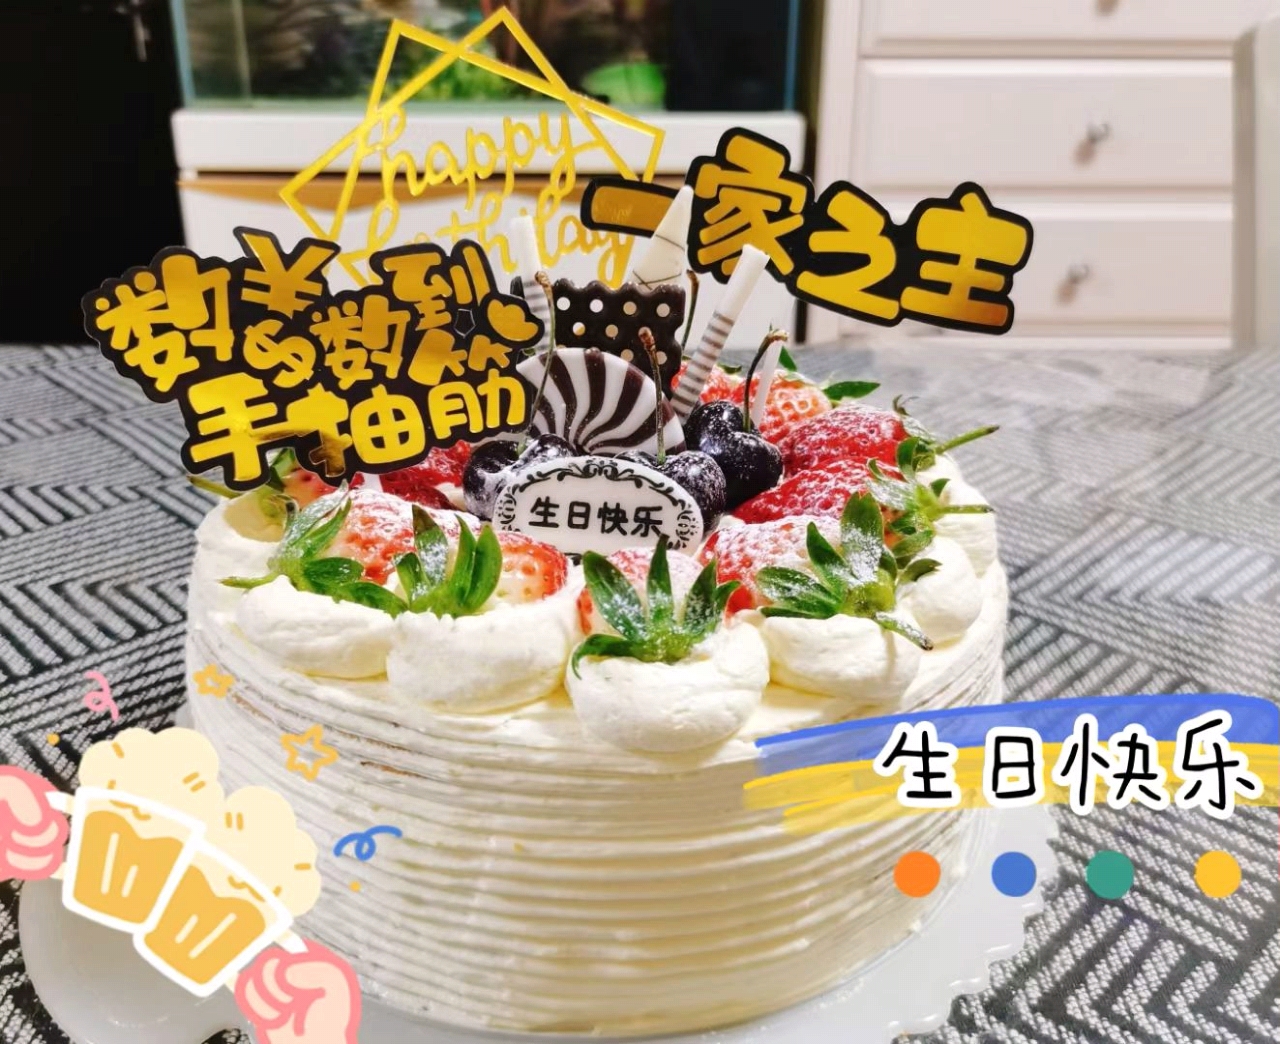 超简单的生日蛋糕裱花装饰